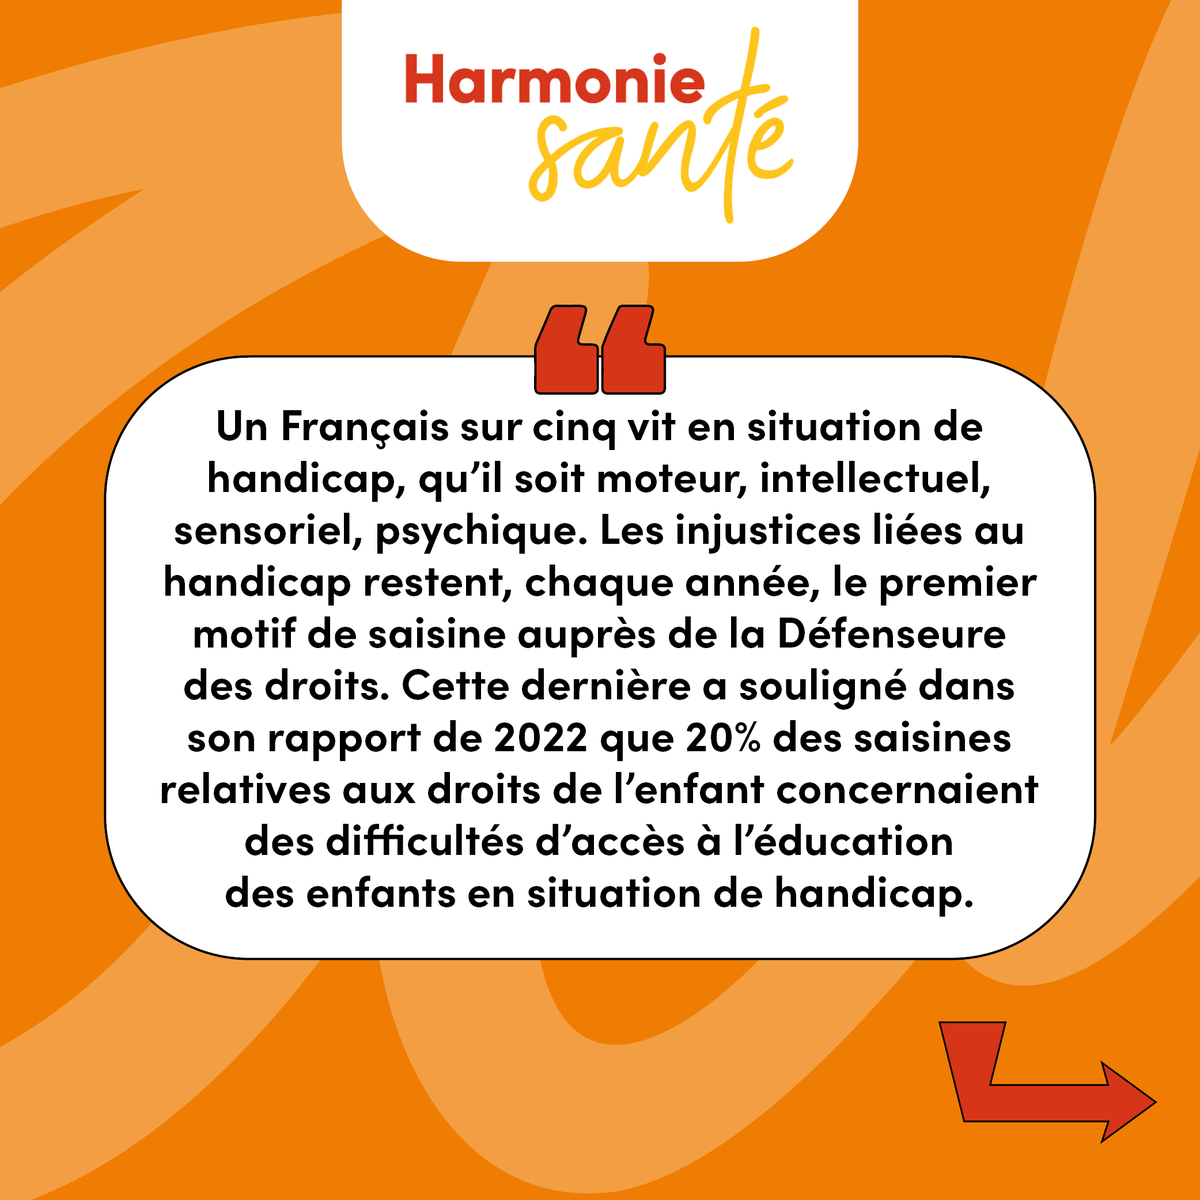 Harmonie_Sante tweet picture